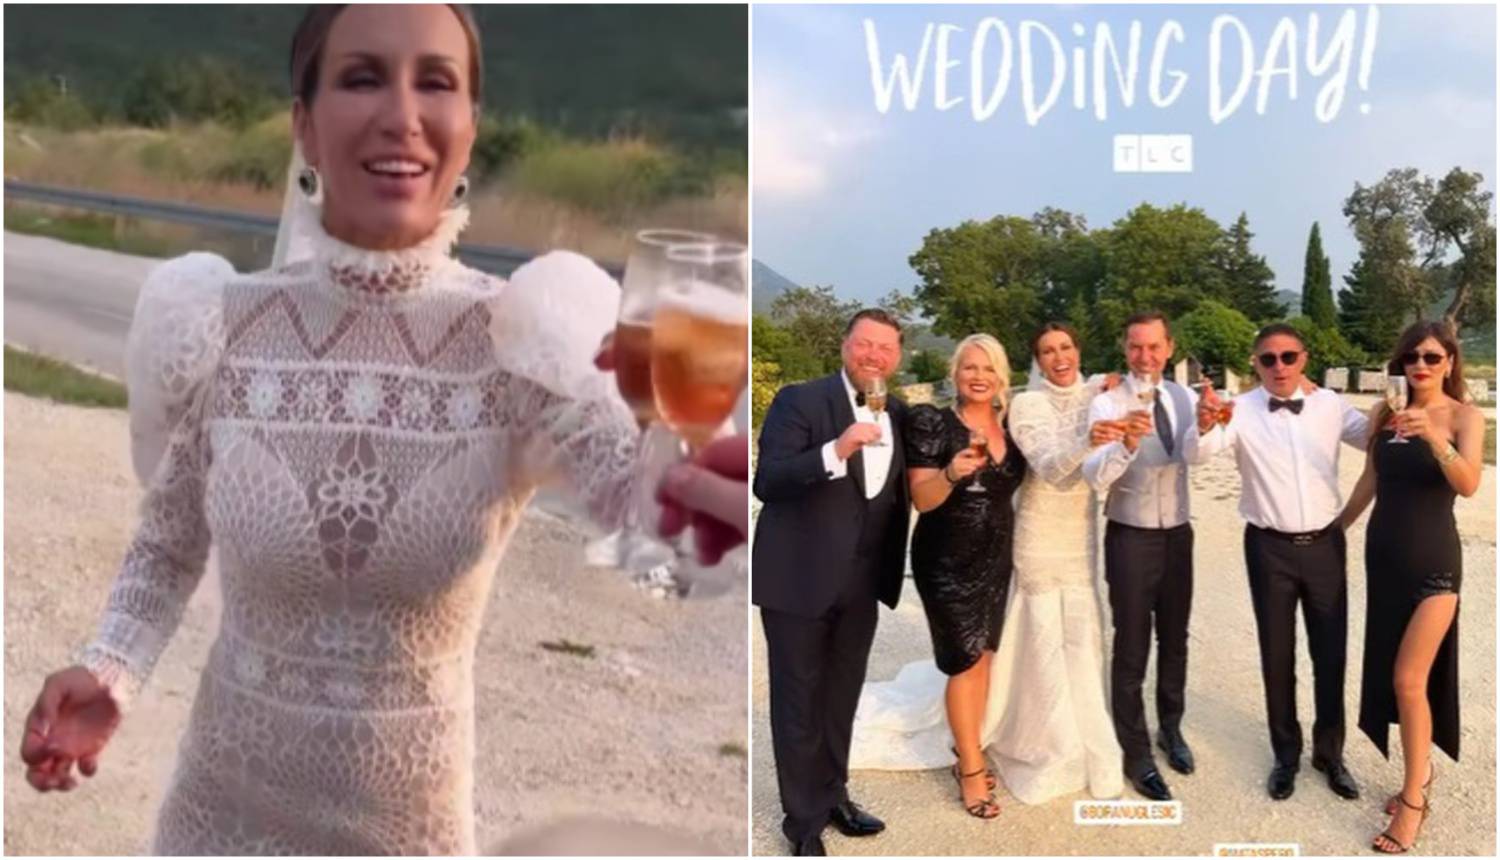 Ana Gruica Uglešić podijelila je prve fotke vjenčanja: Mladenci veselo nazdravljali s kumovima